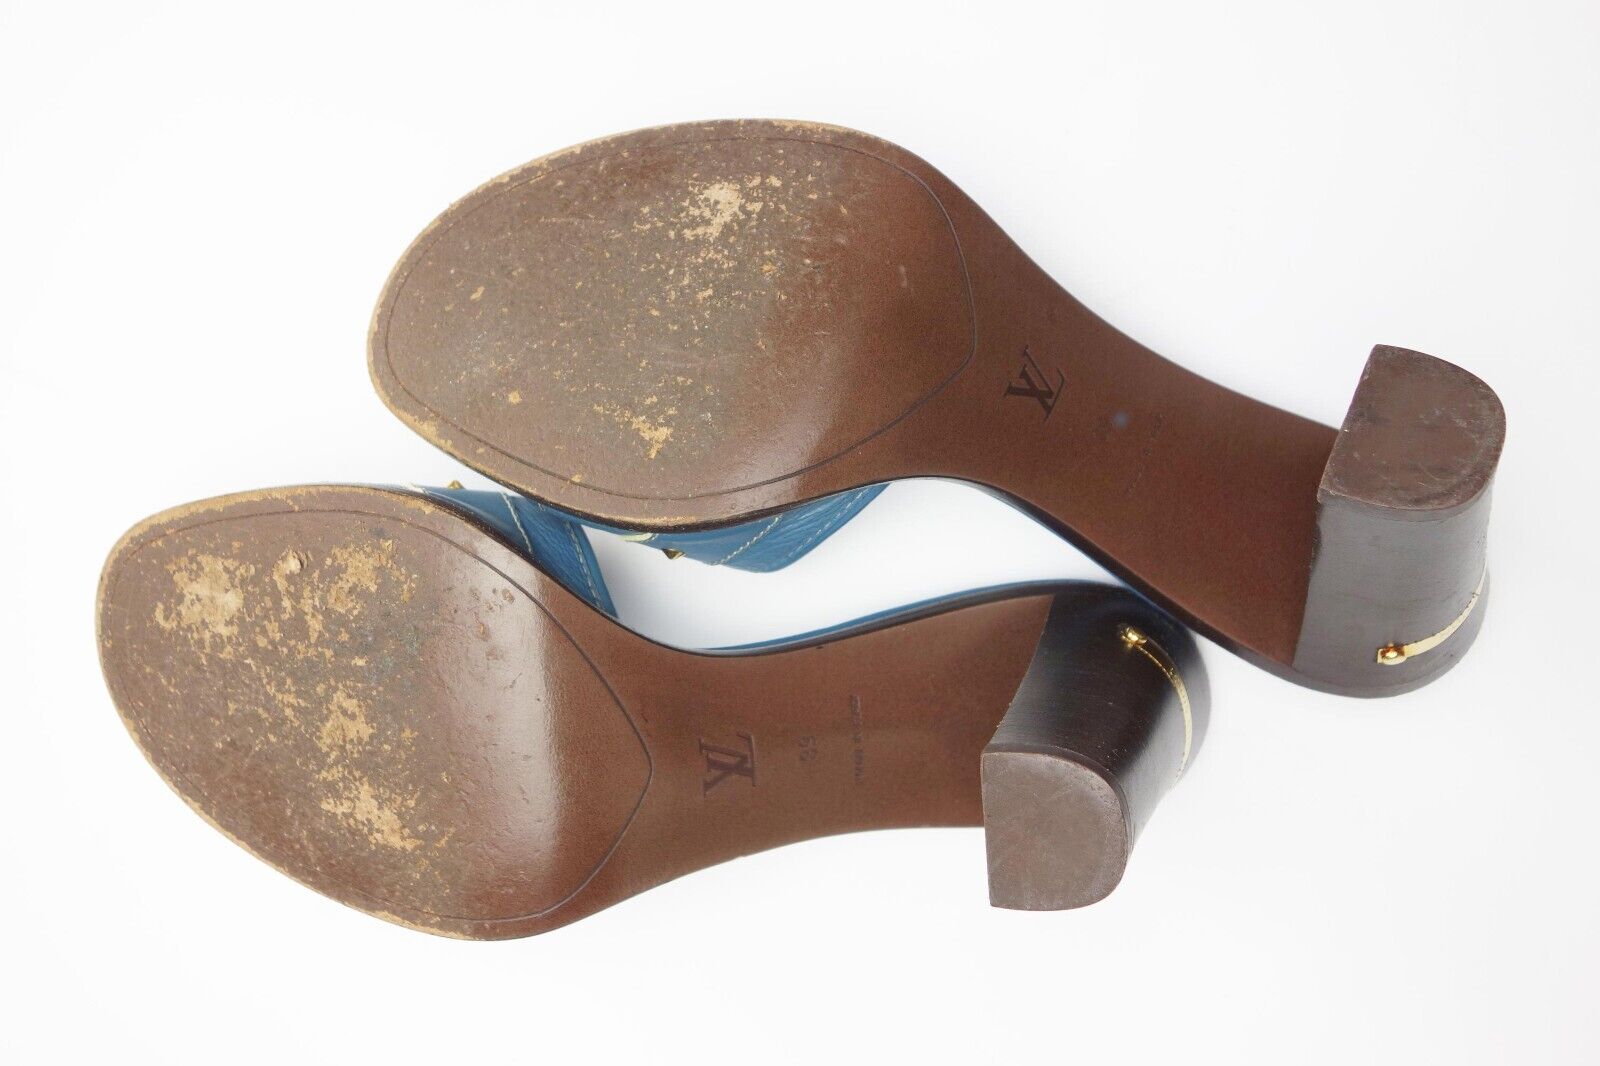 Louis Vuitton Vintage Blue Leather Embellished Buckle Slide Sandals Logo Heels